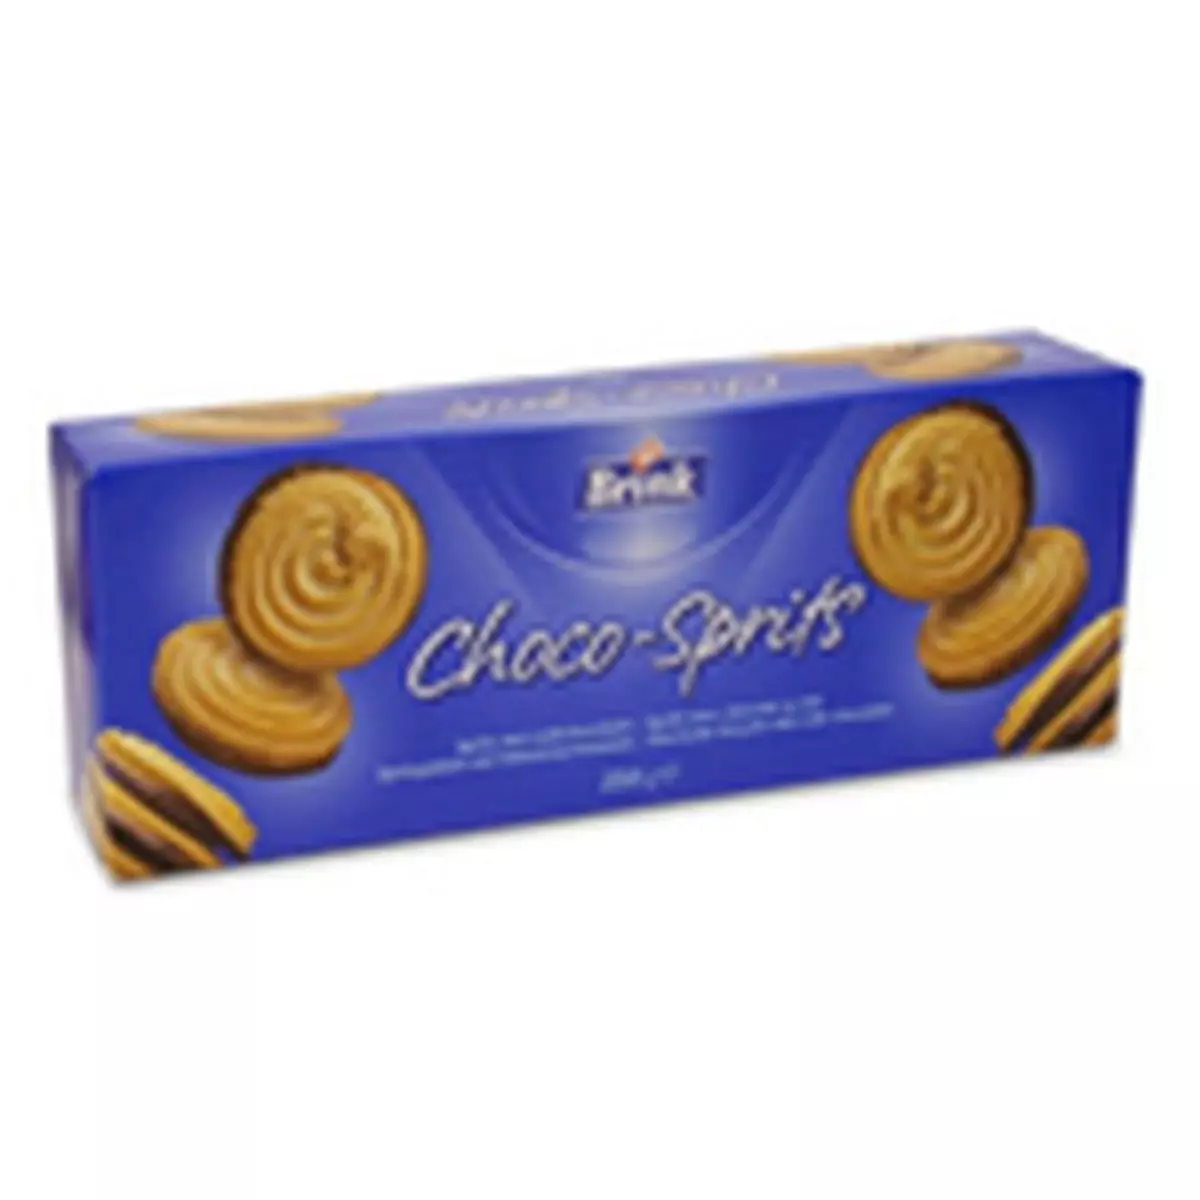 BRINK Choco-sprits biscuits au chocolat au lait 250g